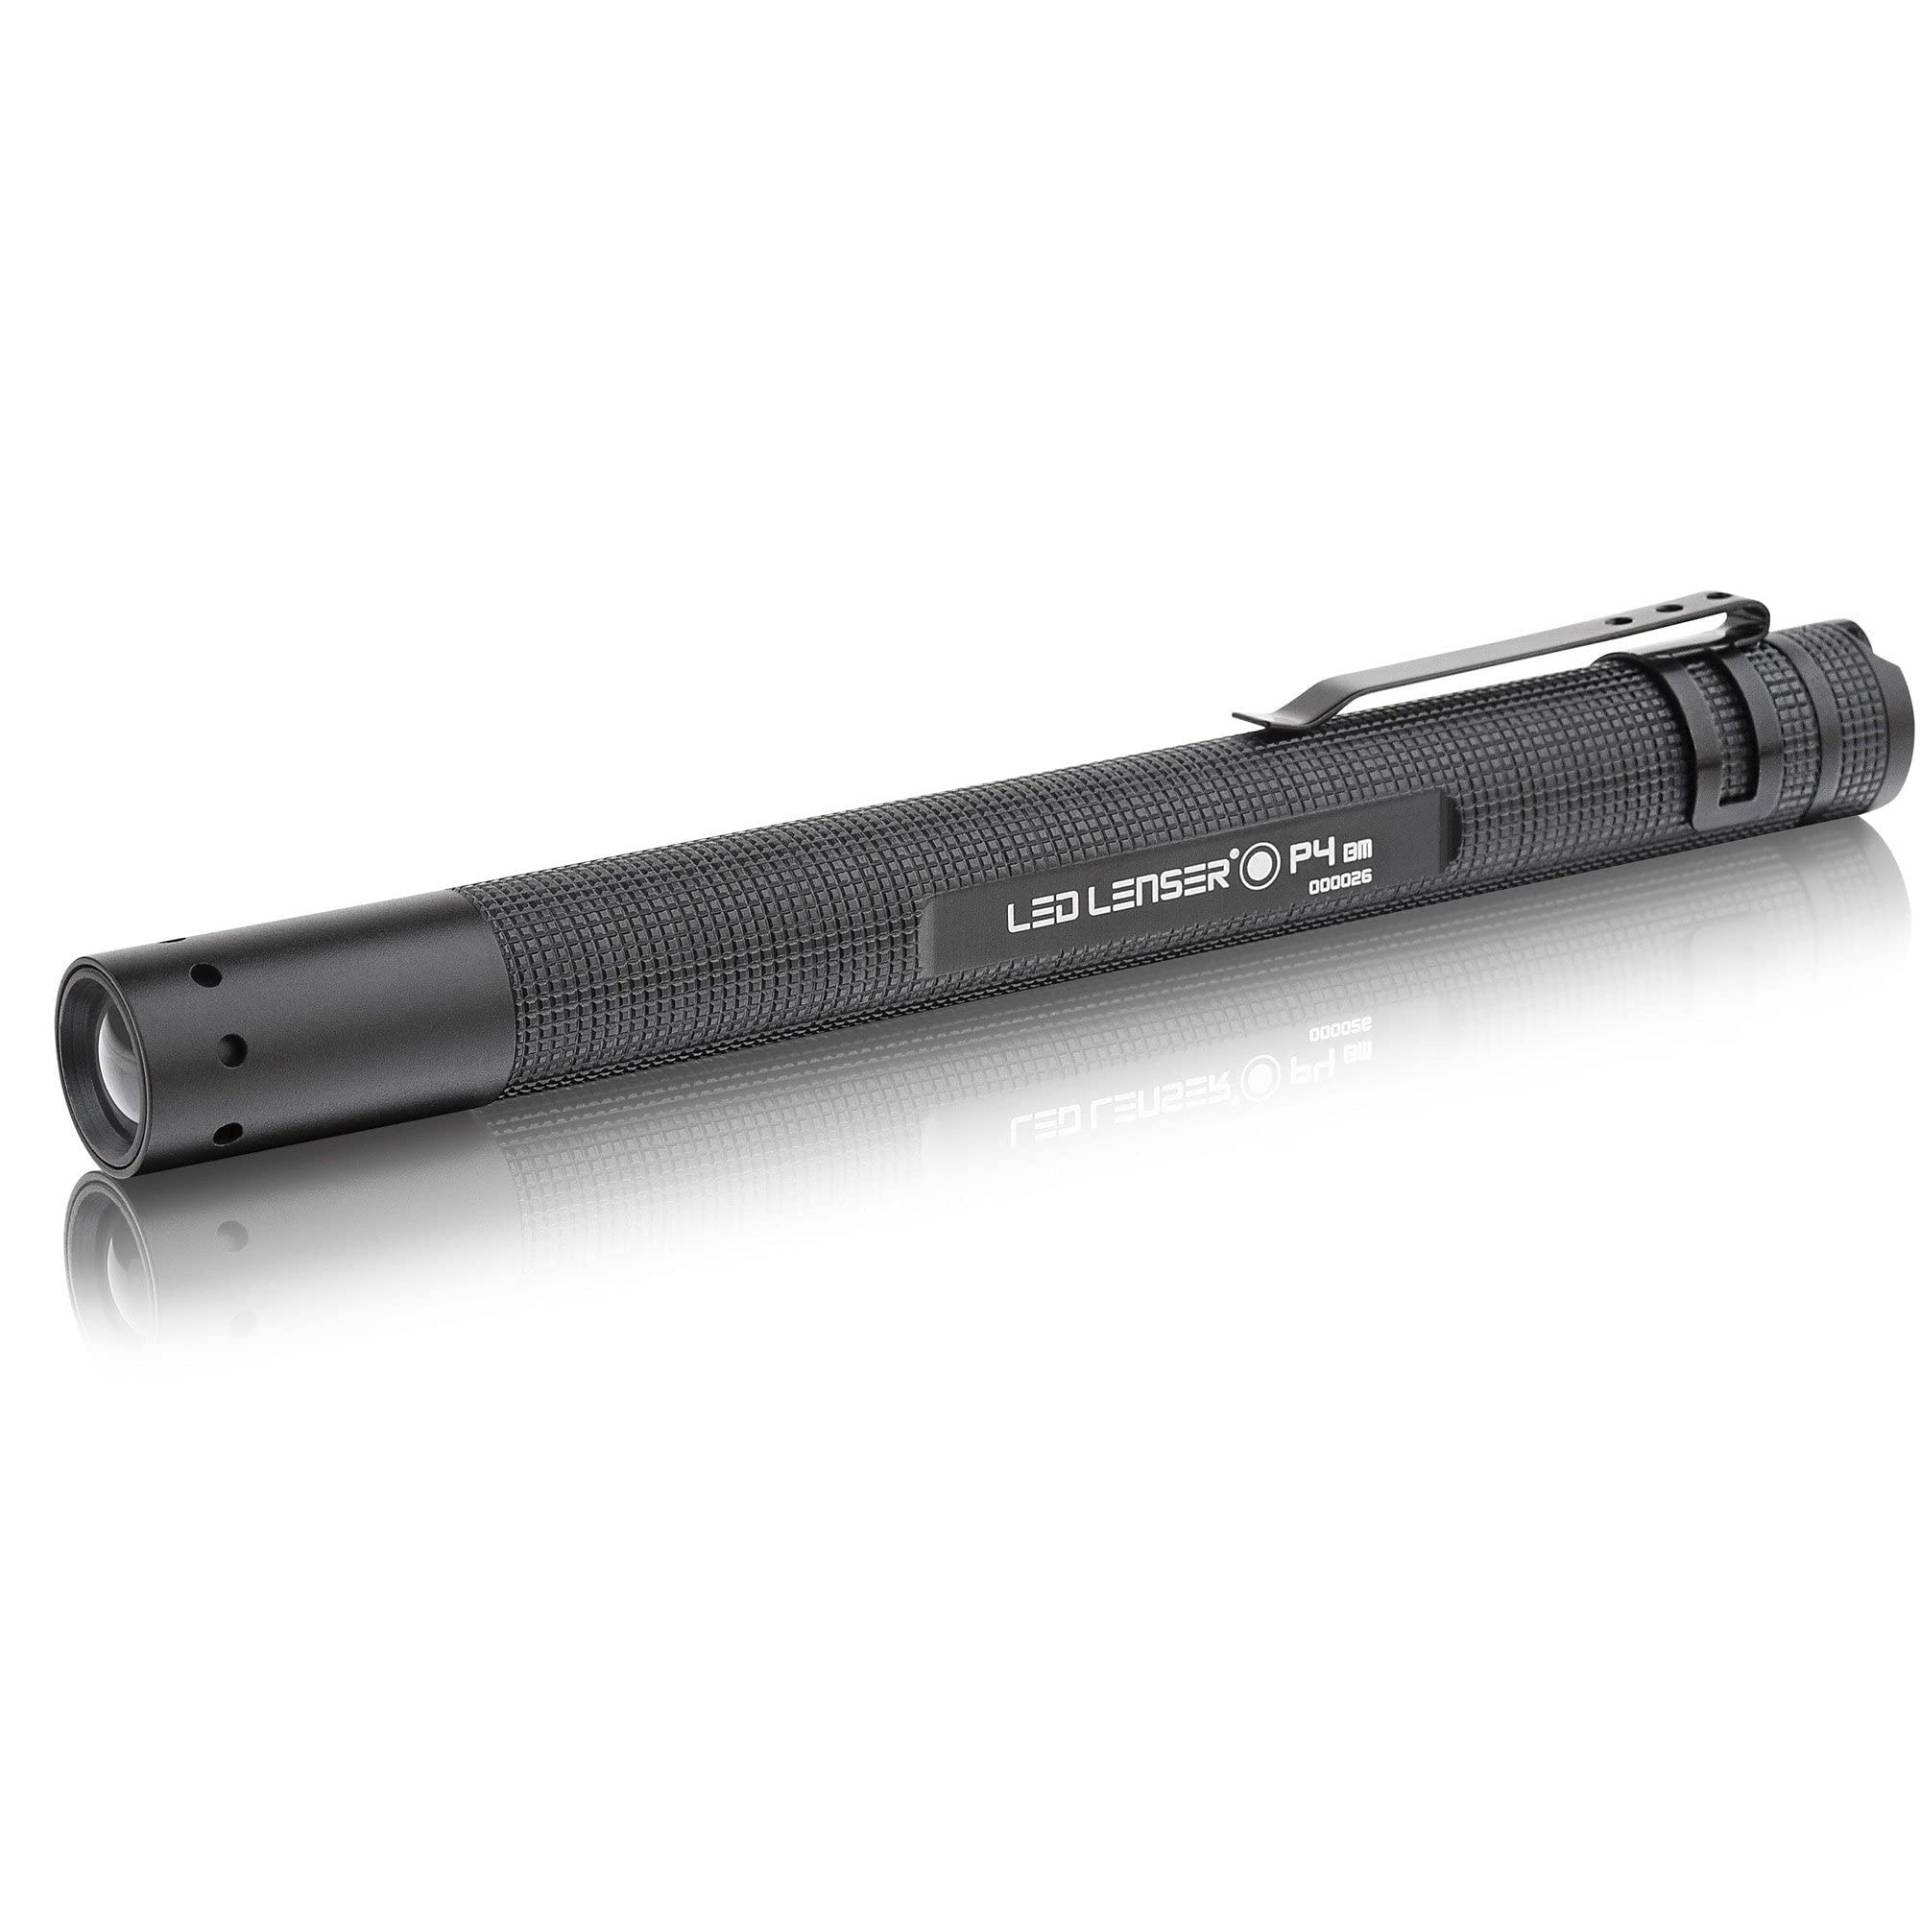 LED Lenser P4 Stiftlampe, Penlight, 25 Meter Leuchtweite, fokussierbar, mit Batterie, inkl. Gürteltasche, Handschlaufe, Schlüsselring, Taschenclip von Ledlenser